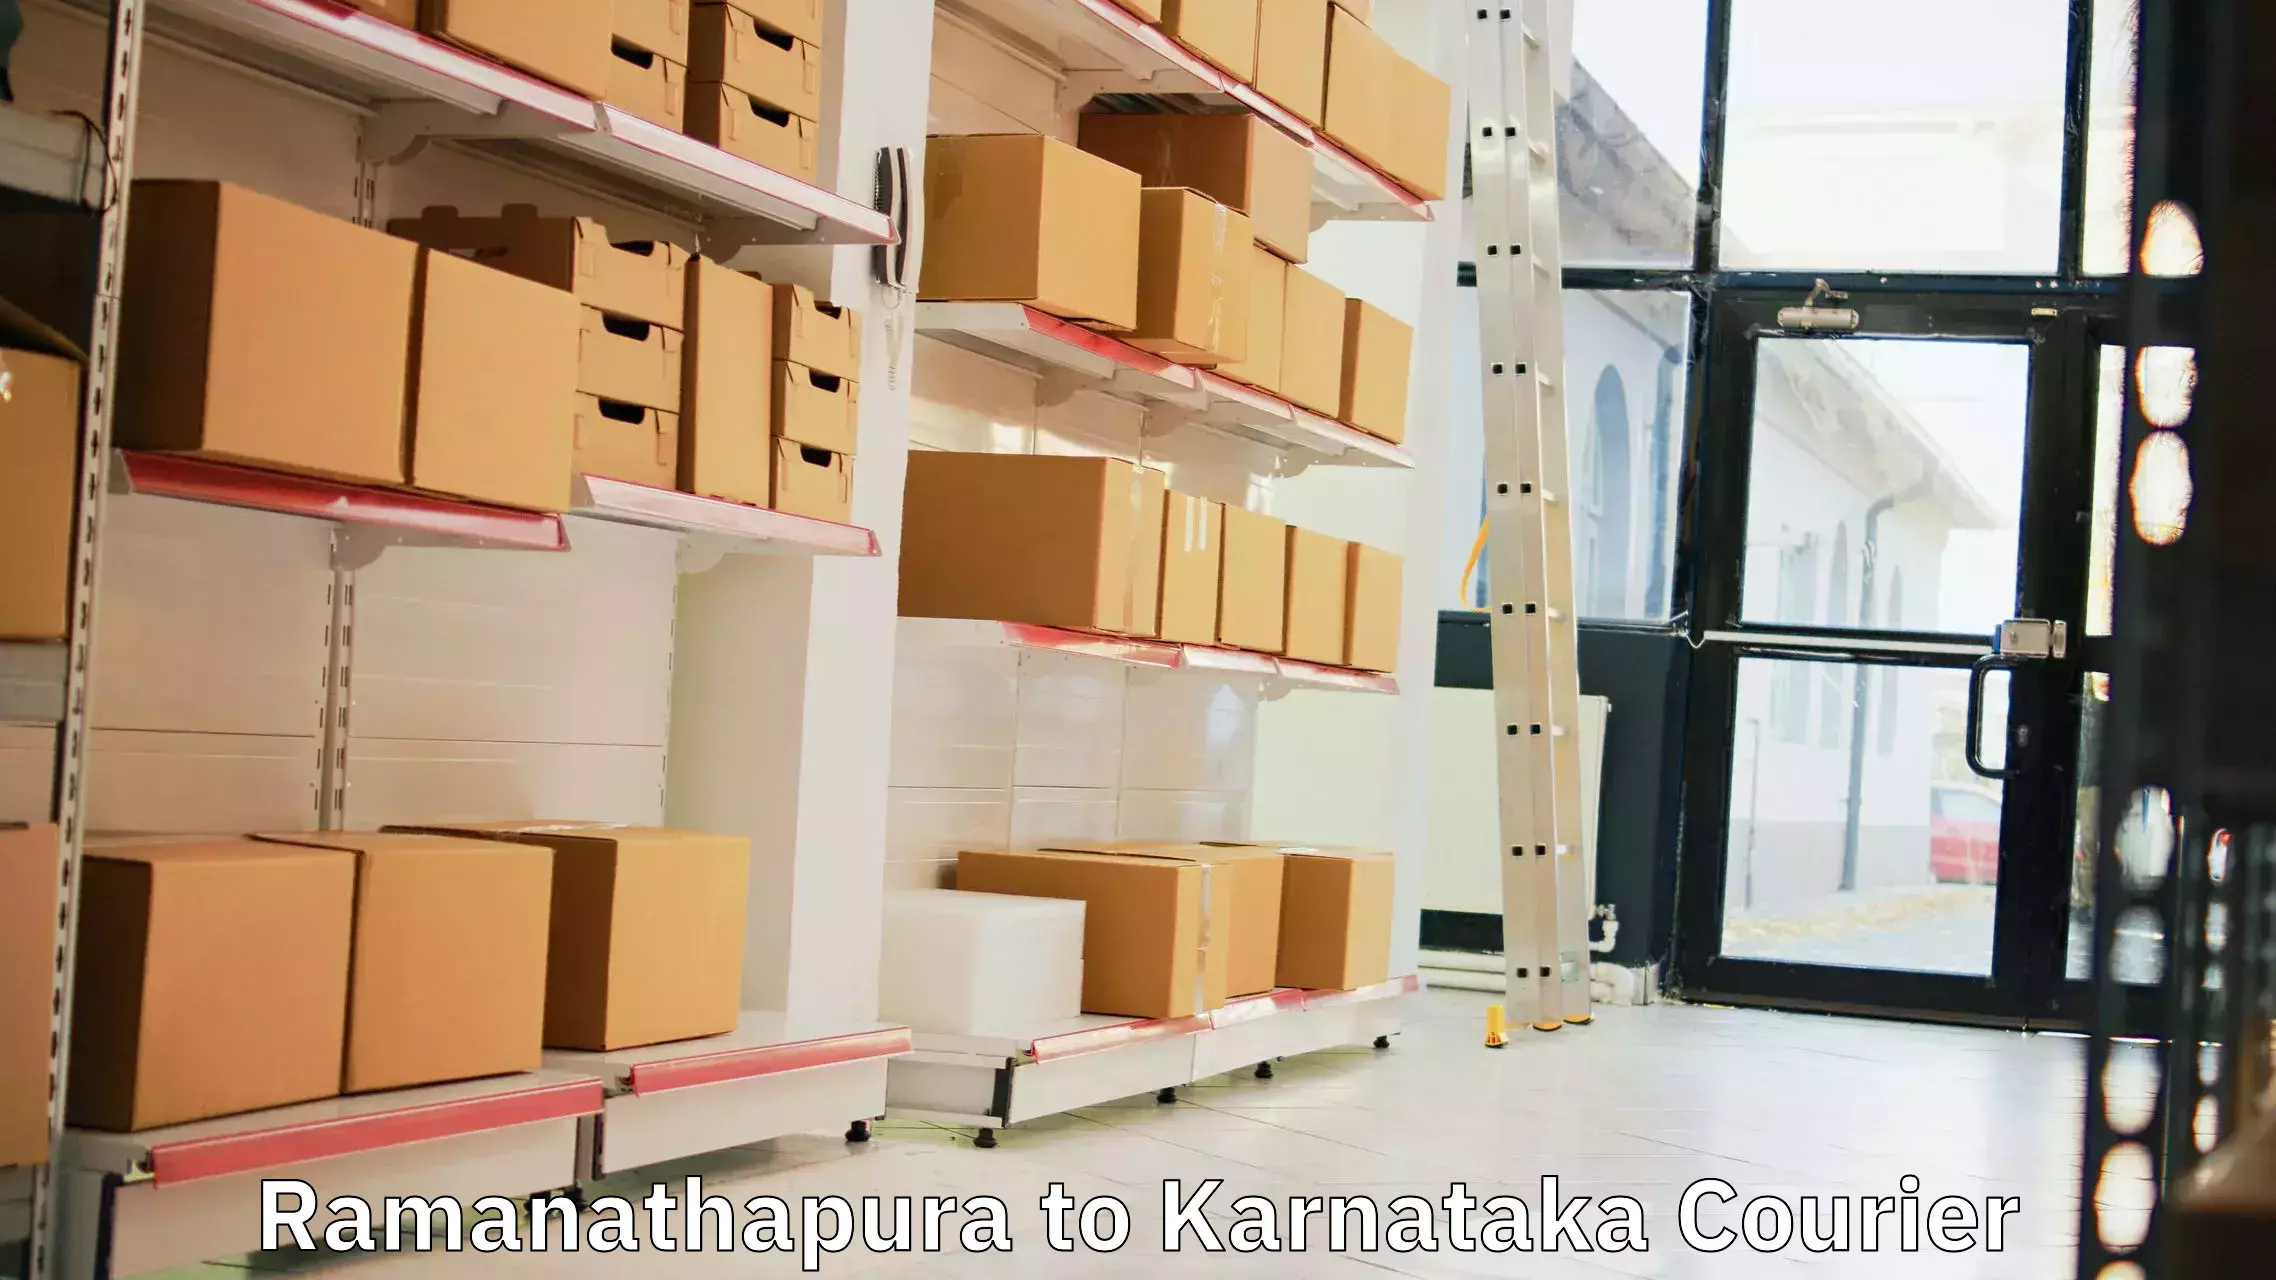 Global courier networks Ramanathapura to Kadur